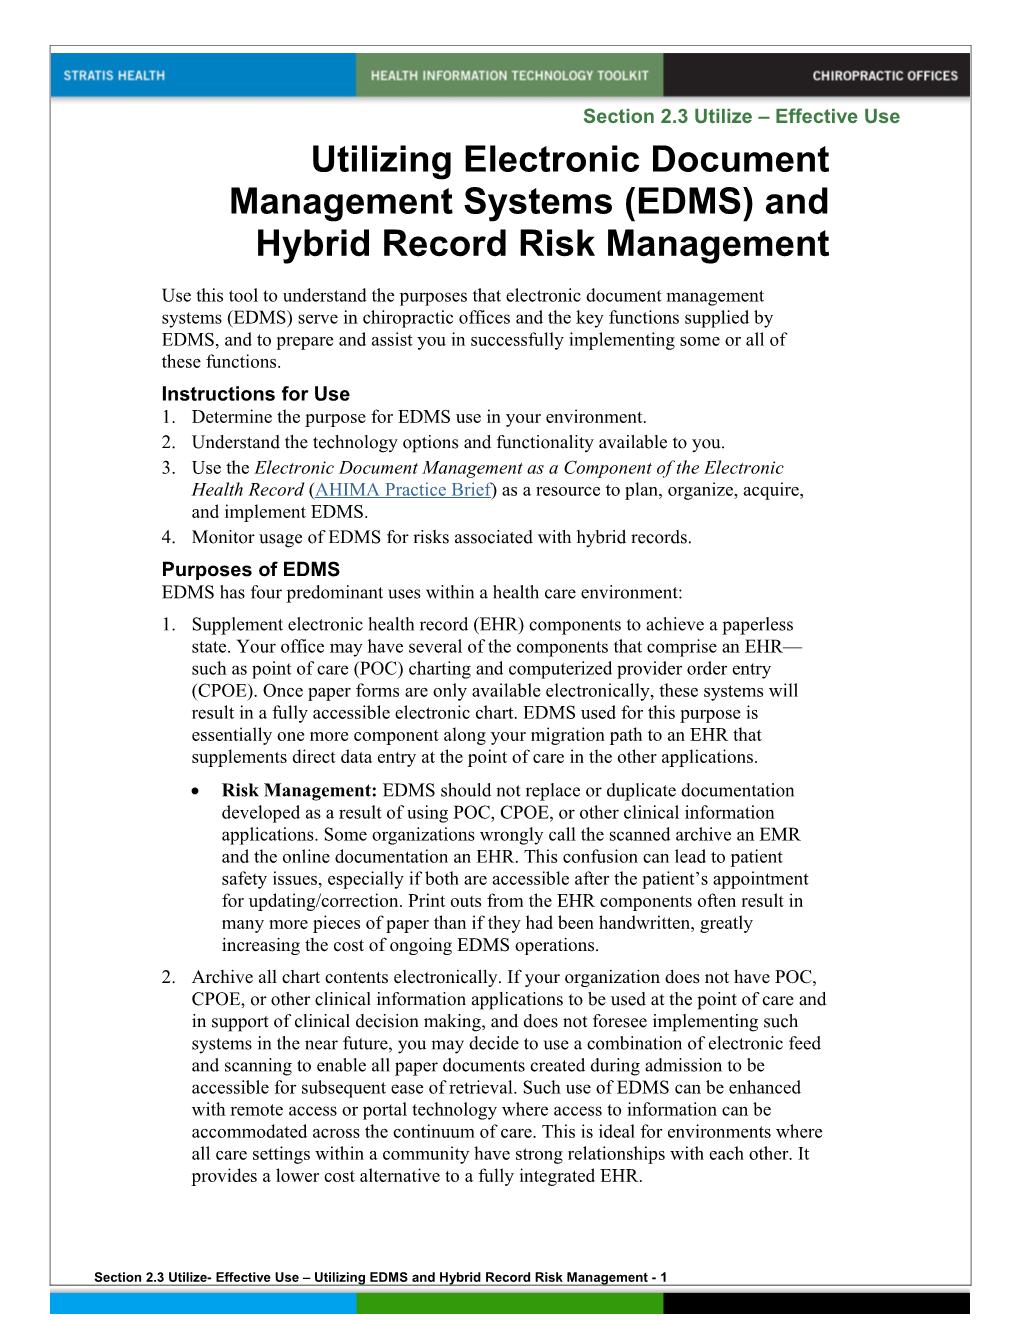 2.3 Utilizing EDMS and Hybrid Record Risk Management